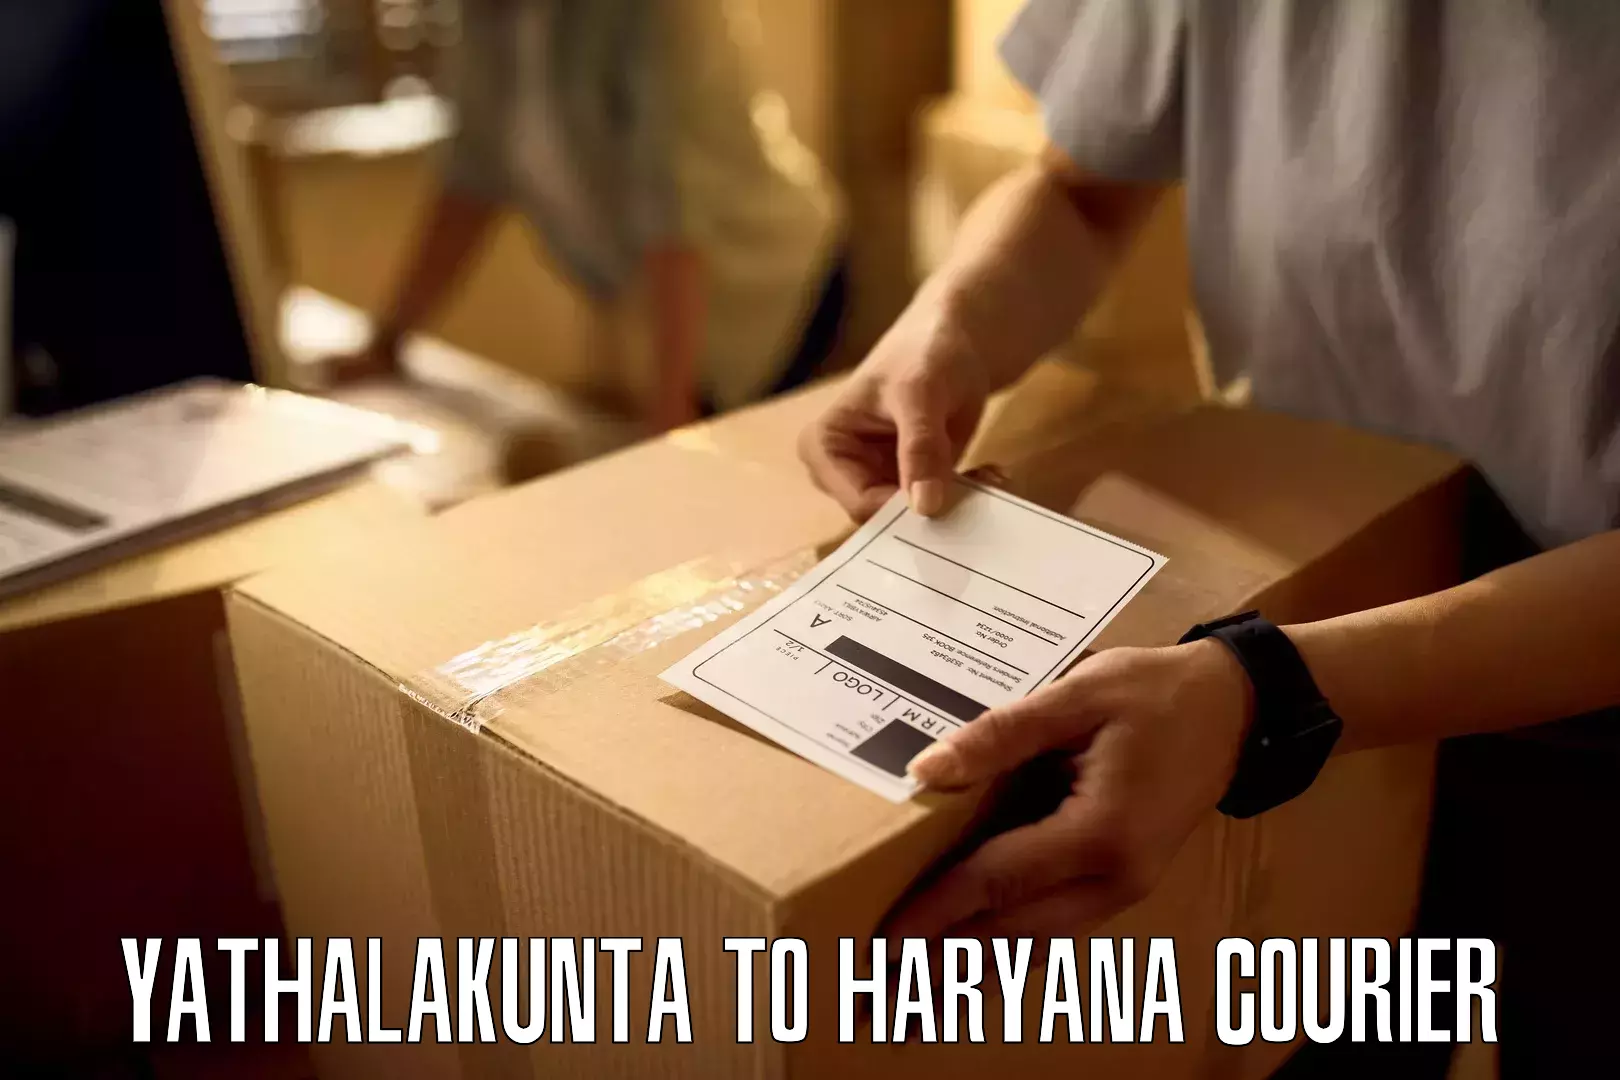 Fast shipping solutions Yathalakunta to Haryana